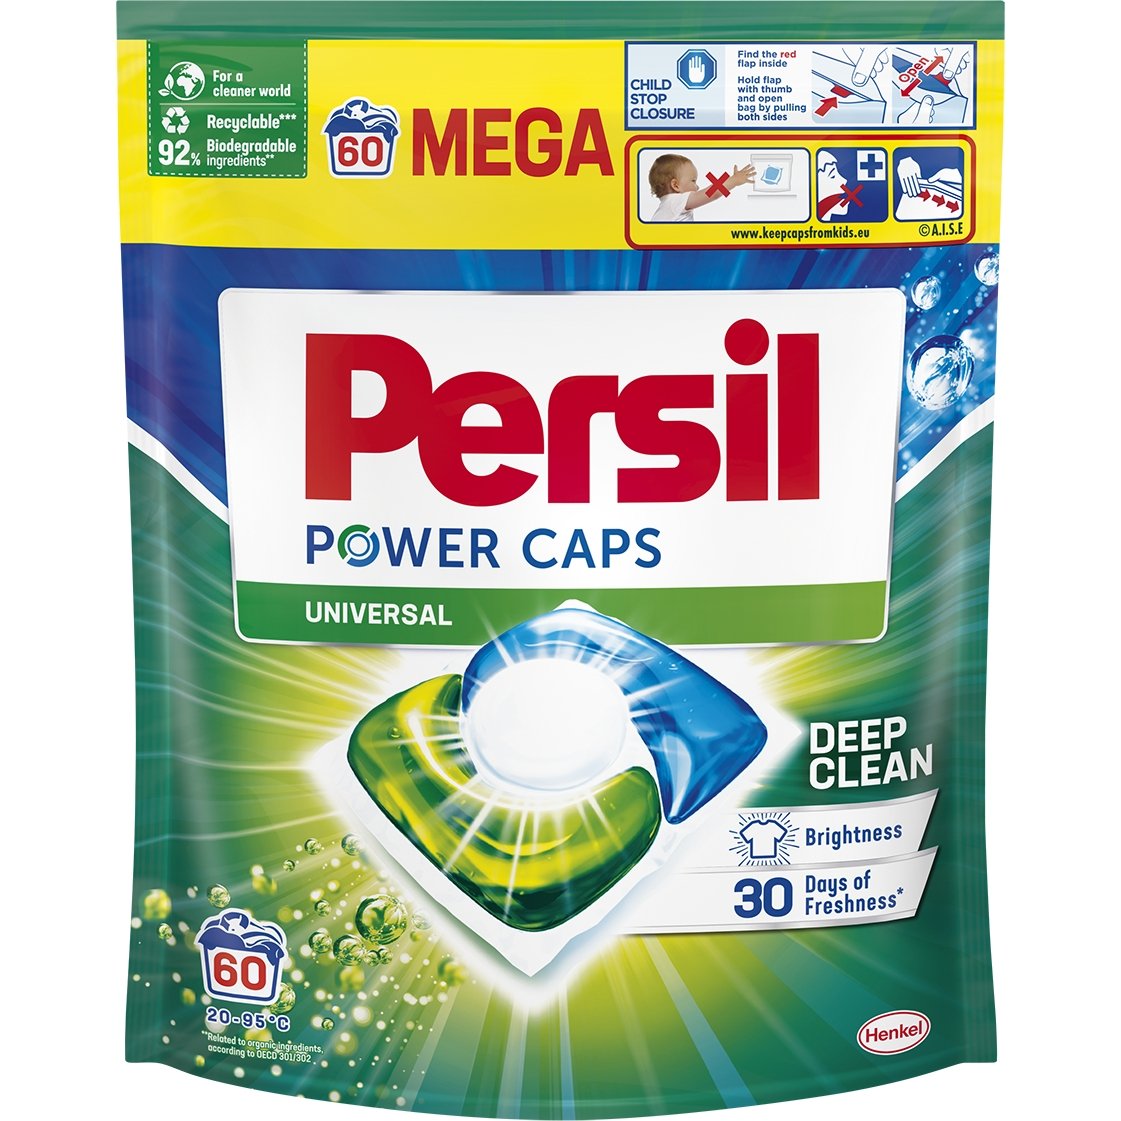 Капсулы для белых и светлых вещей Persil Power Caps Universal Deep Clean 60 циклов стирки - фото 1